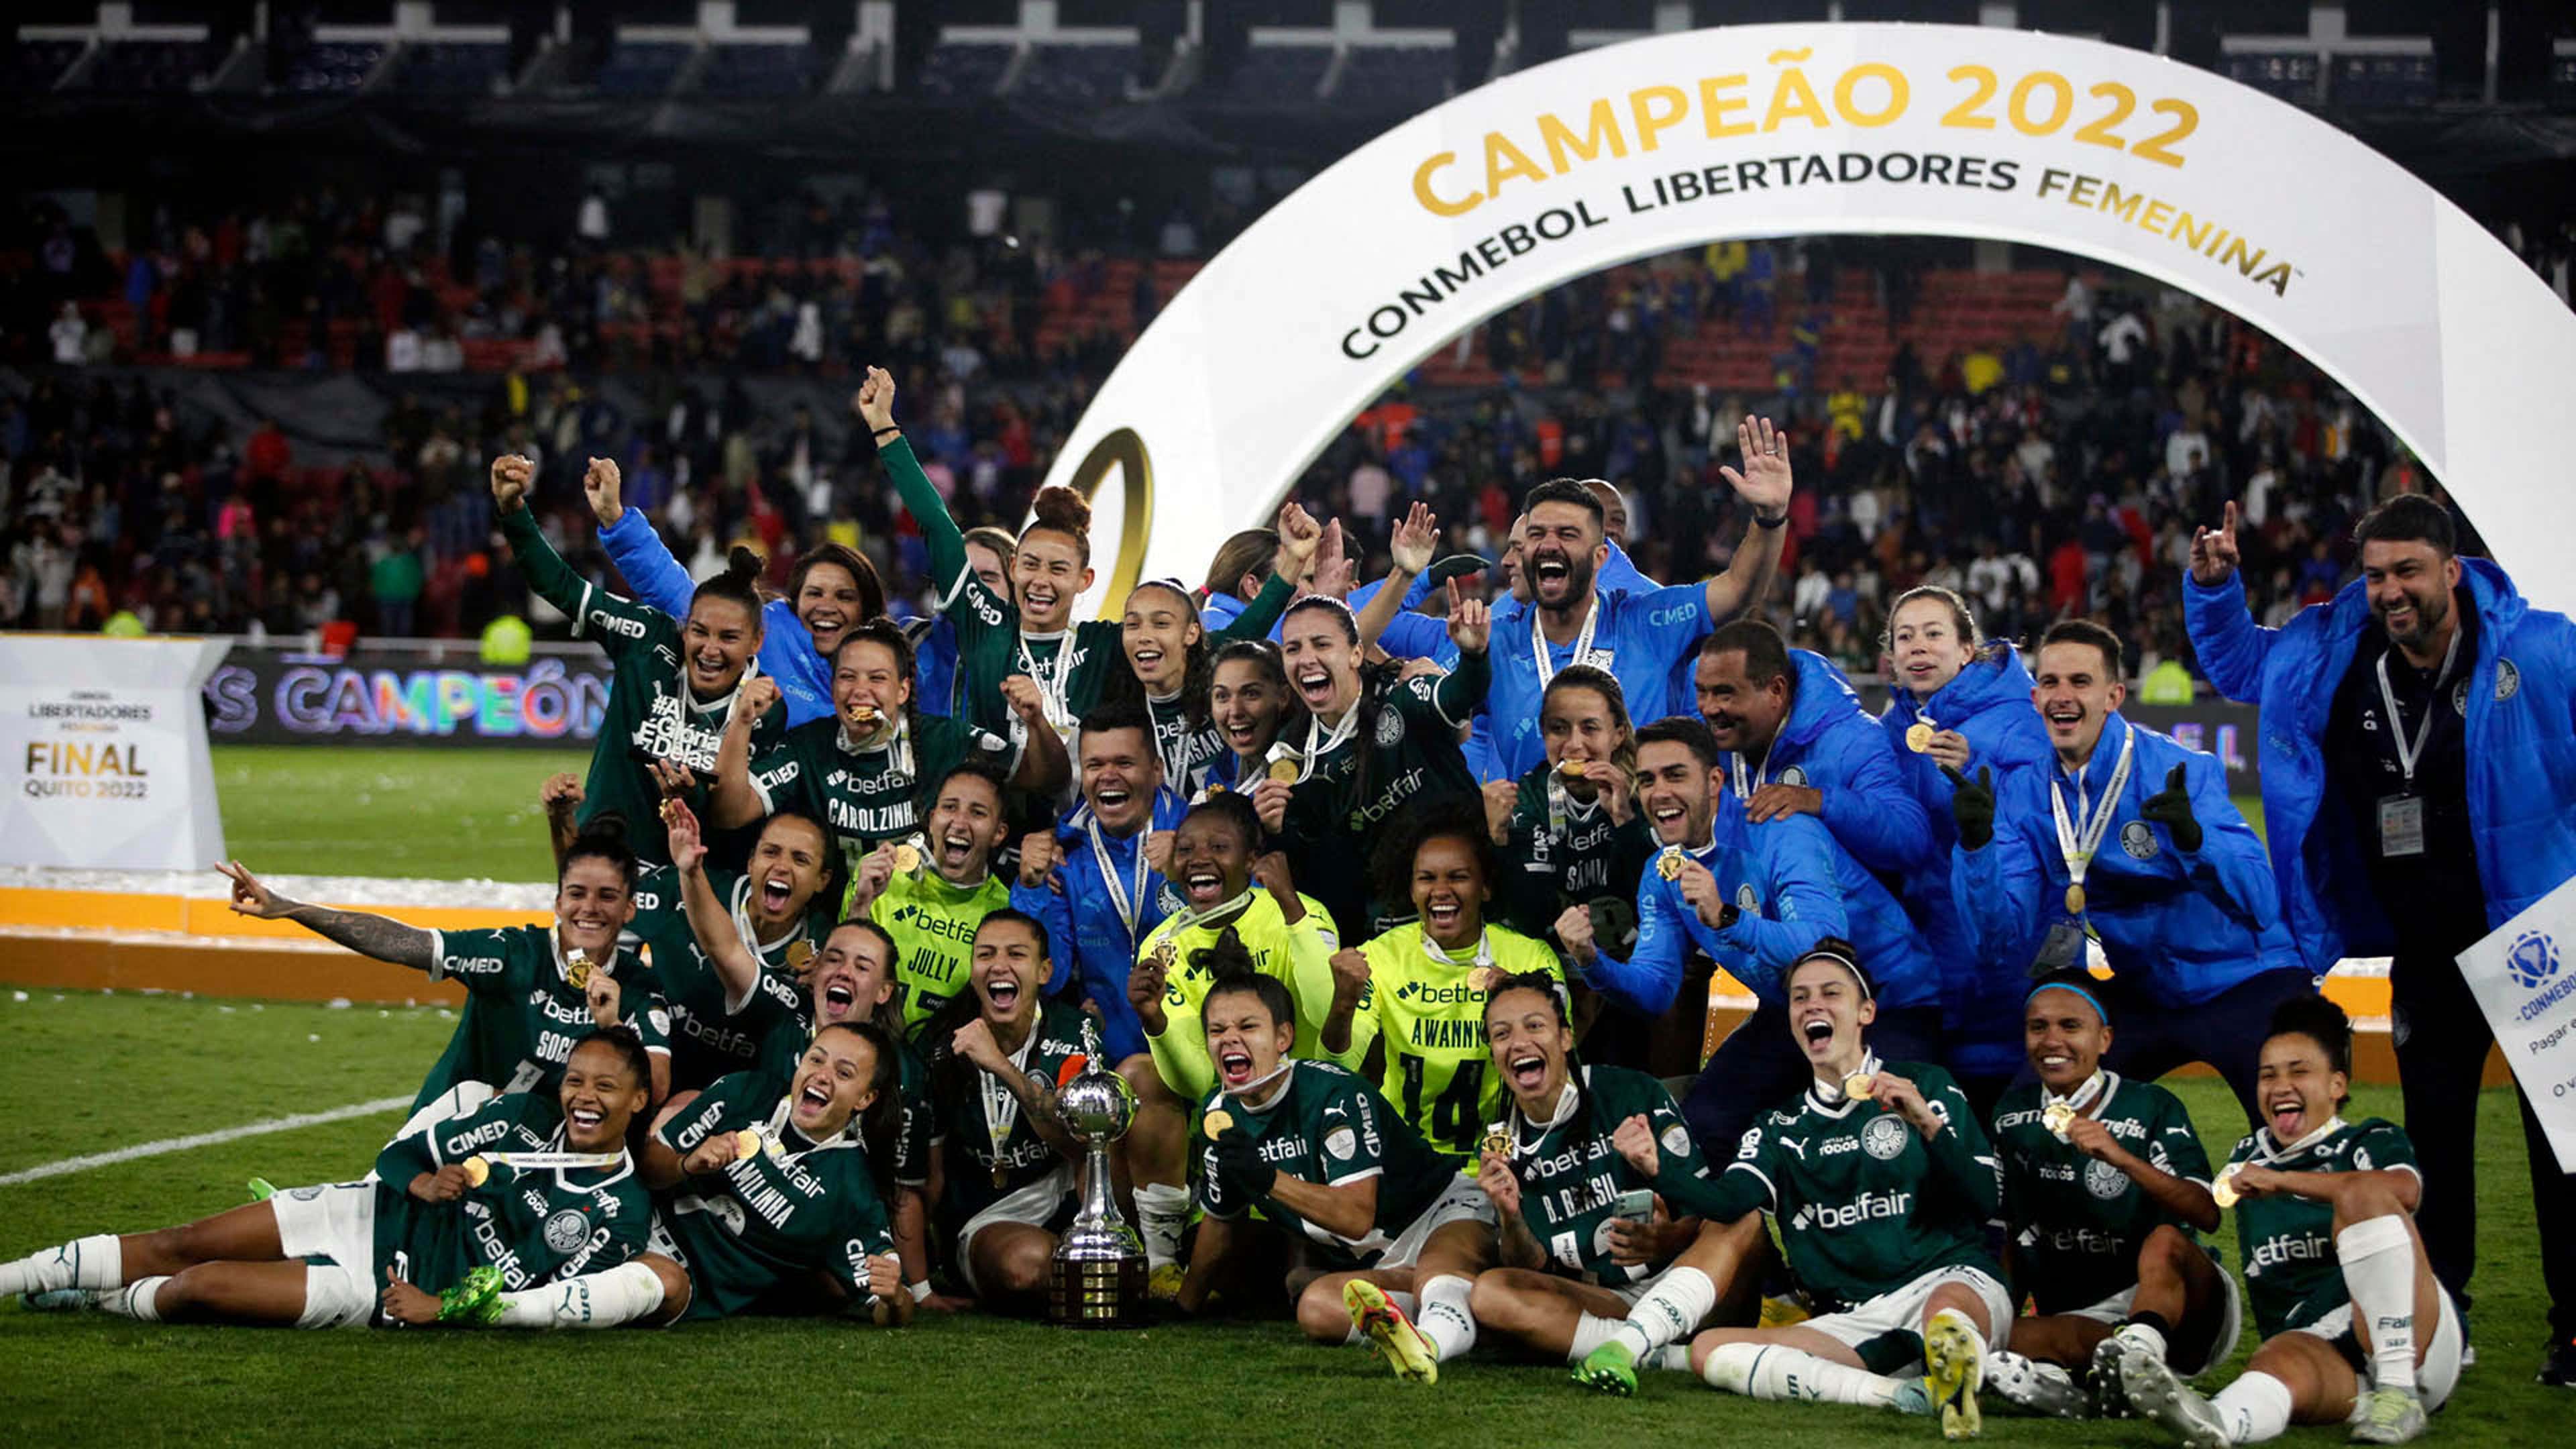 Edição dos Campeões: Palmeiras Campeão Paulista Feminino 2022